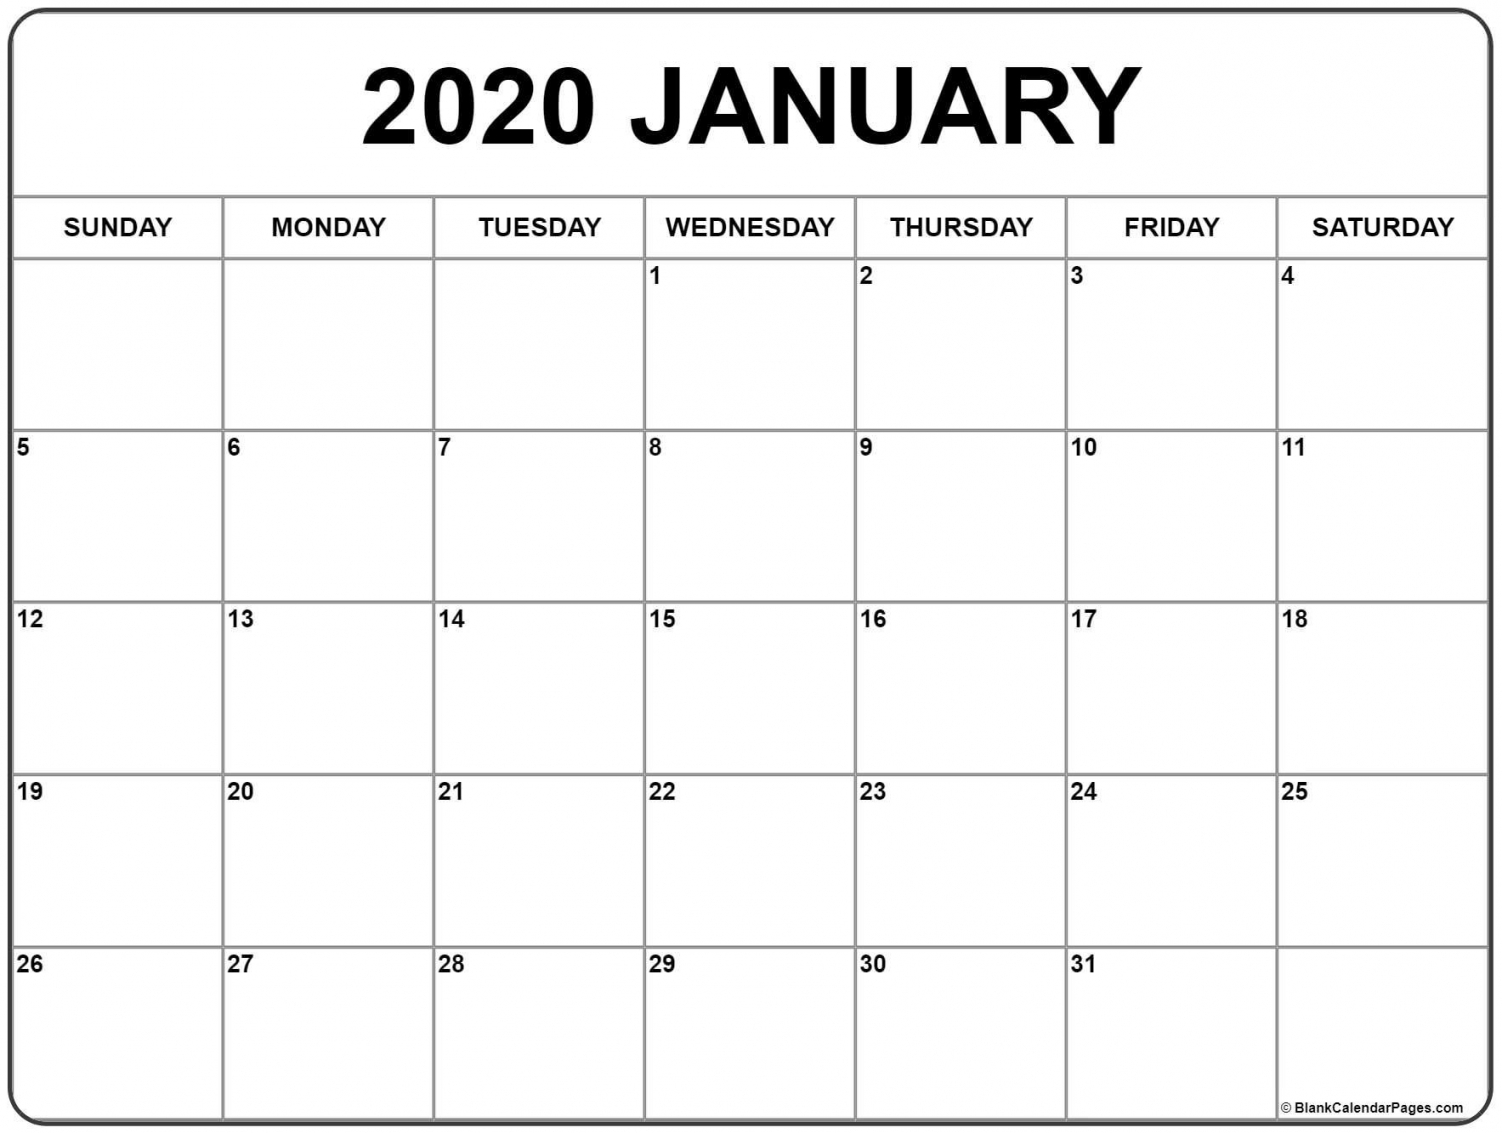 2020 Calendar By Month Printable